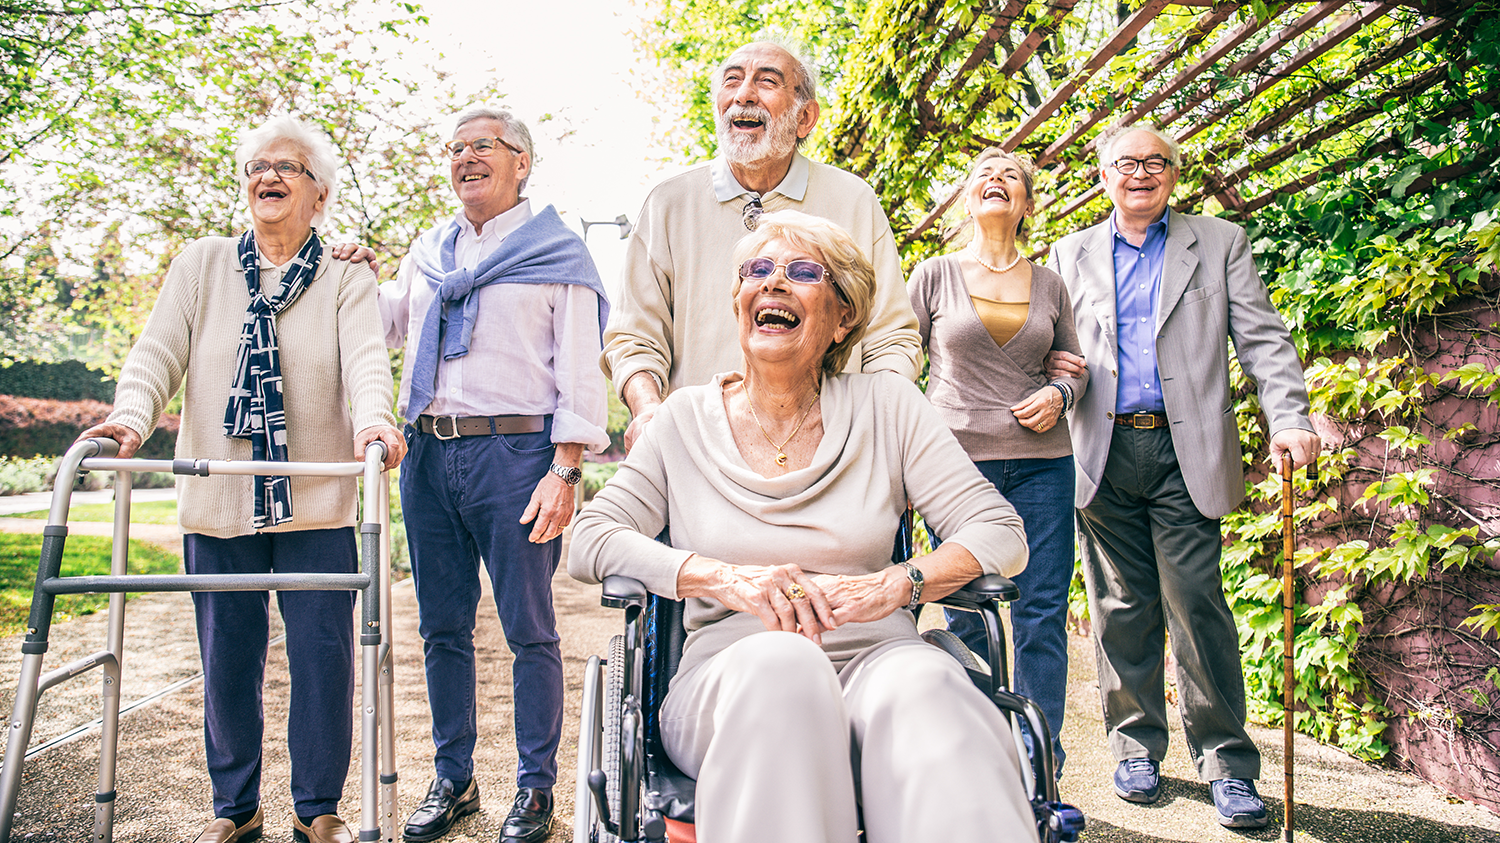 Gehilfen oder ein Rollstuhl können helfen auch im Alter wieder mit Freude mobil zu sein.